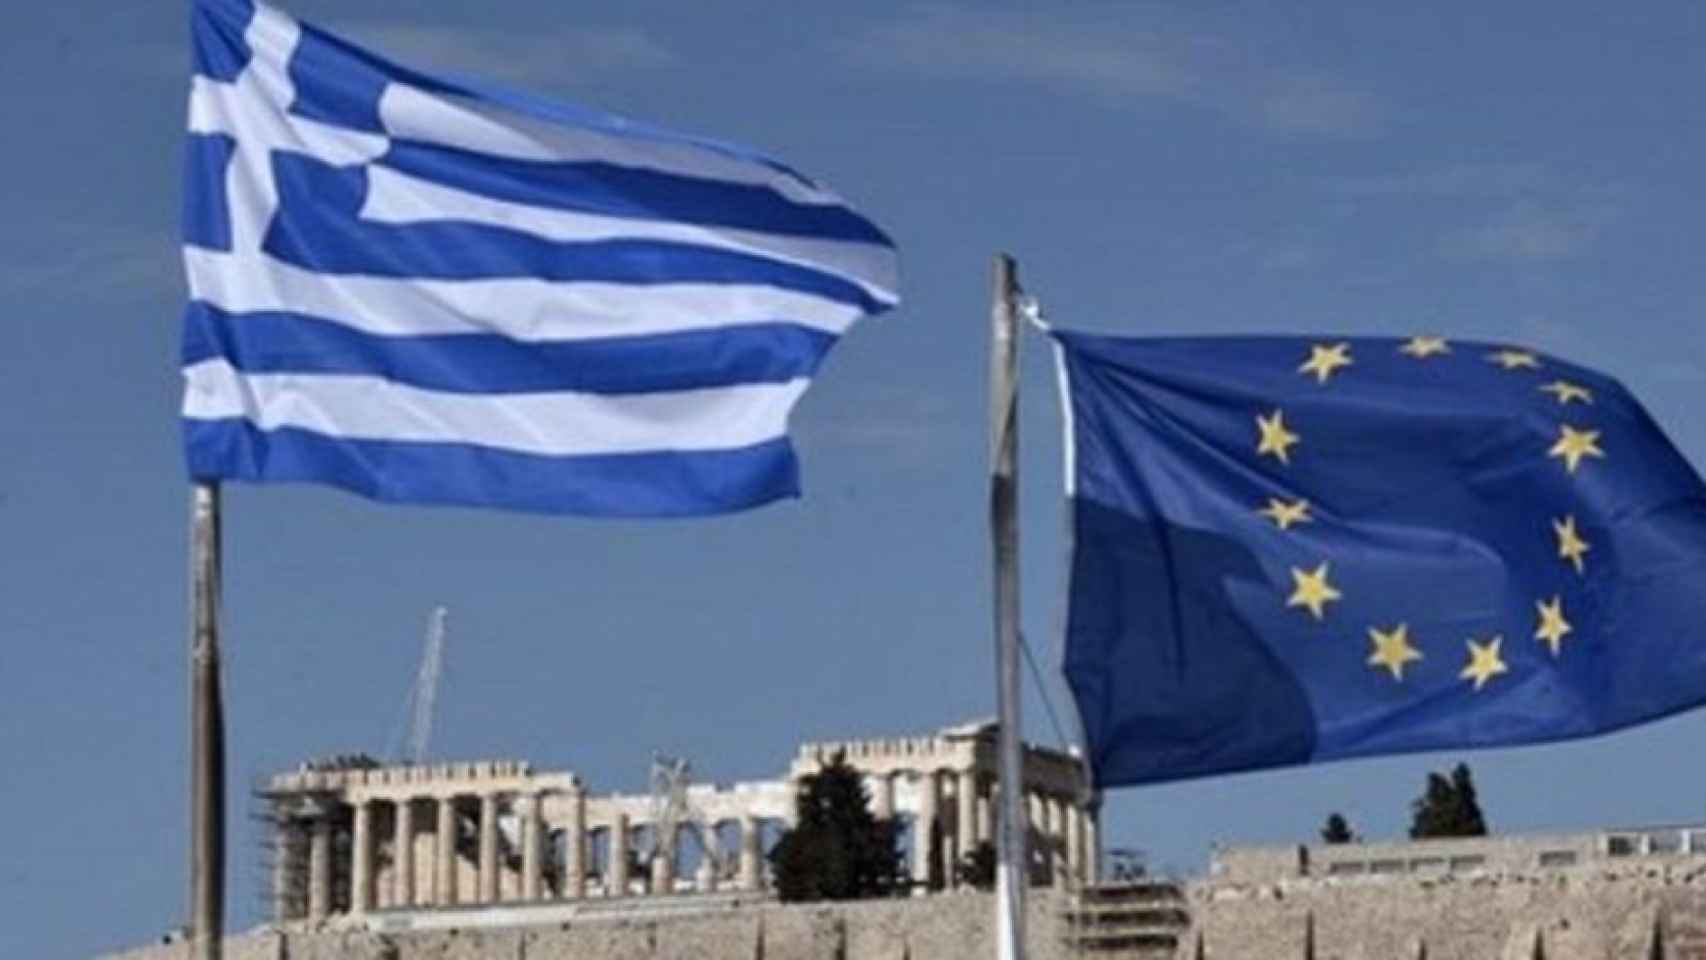 Siete años de programas de rescate y de empobrecimiento en Grecia